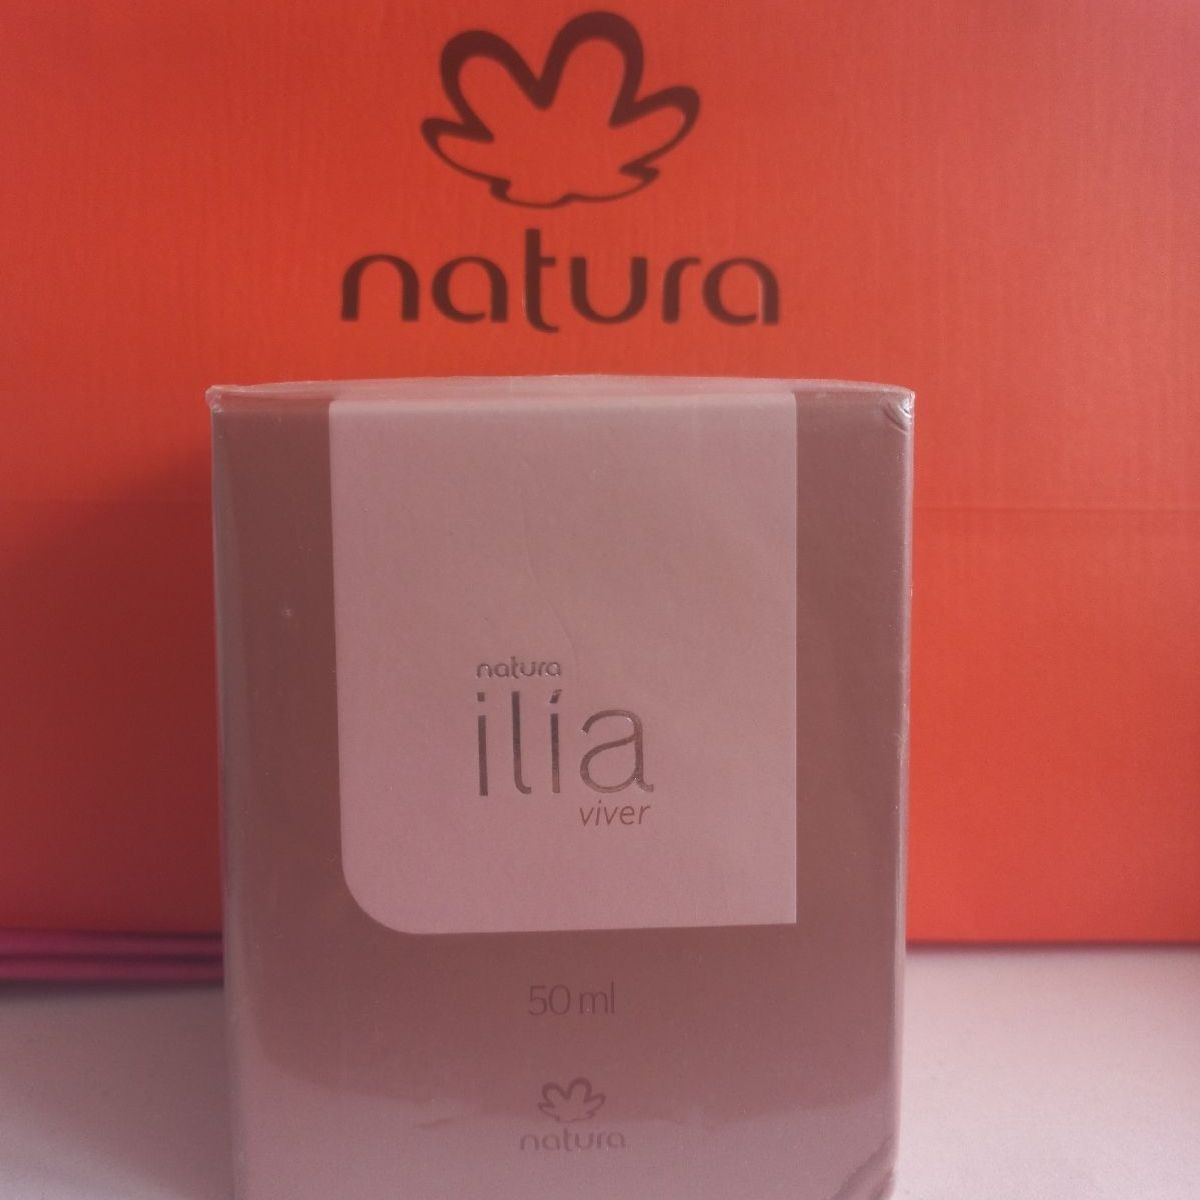 Ilia Viver Natura | Perfume Feminino Natura Nunca Usado 82141104 | enjoei